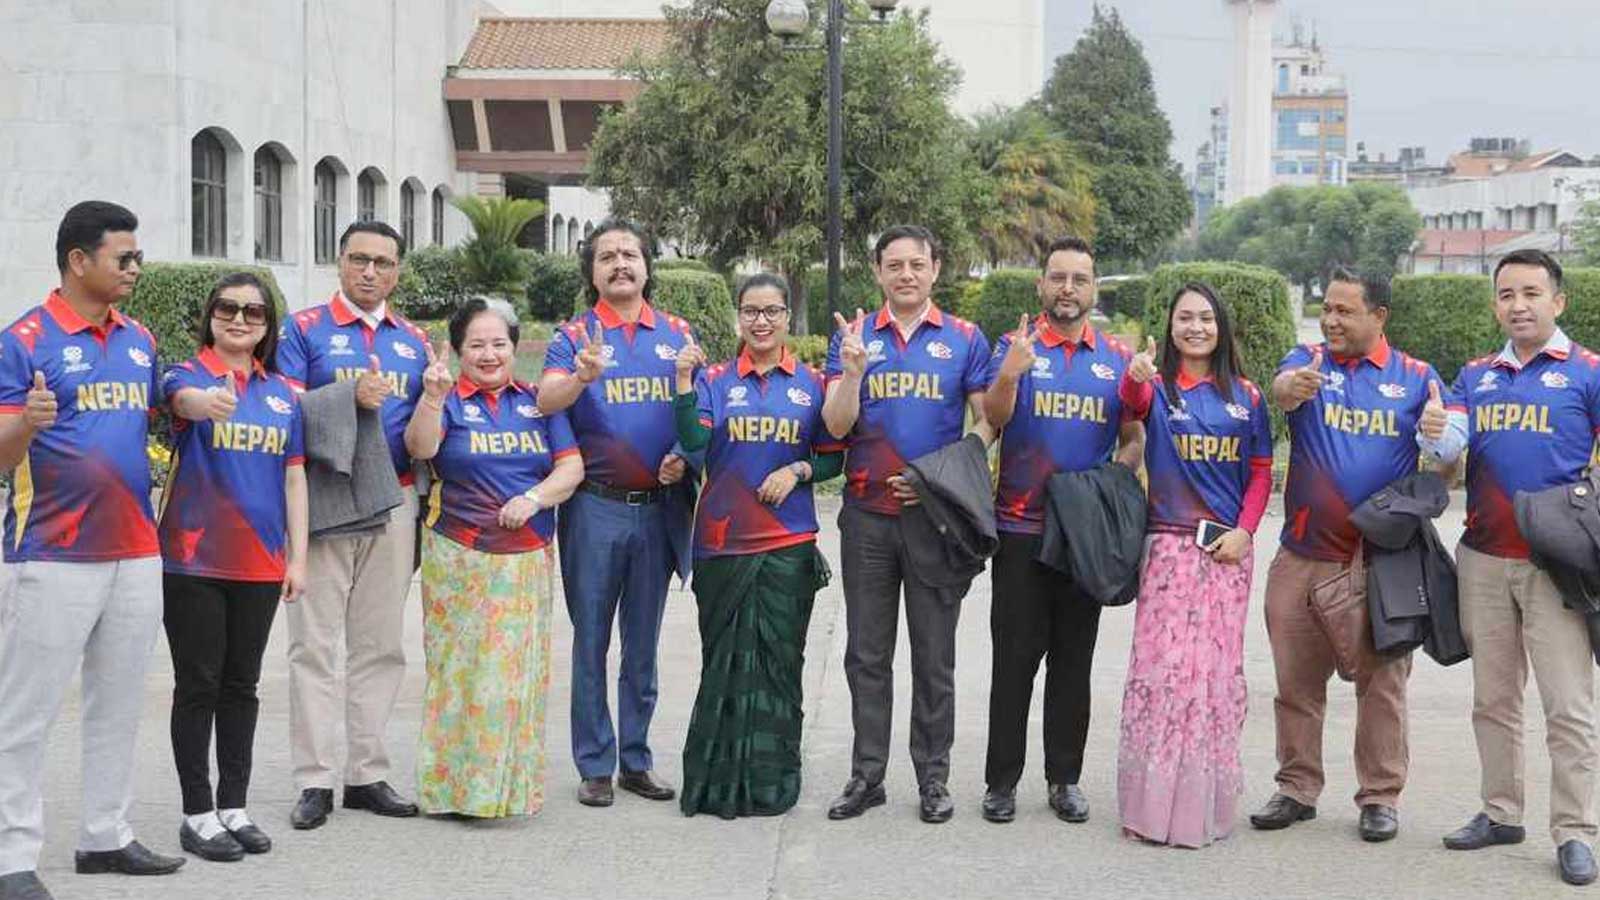 नेपाली क्रिकेट टिमको जर्सी लगाएर रास्वपाका संसदहरु संसद वैठकमा छिरेपछि…